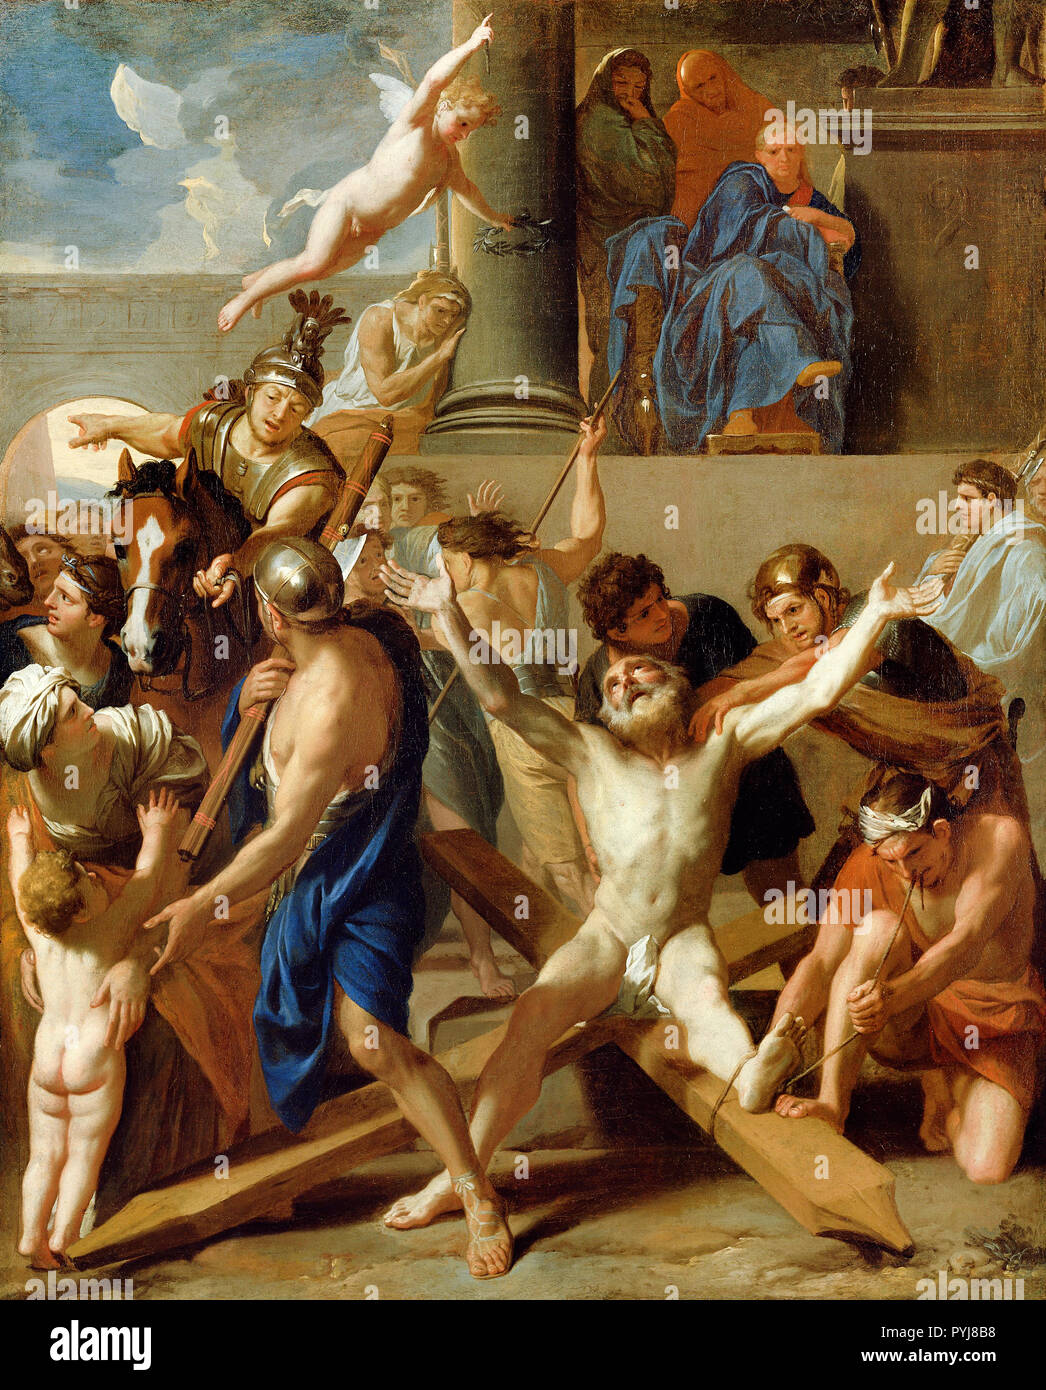 Charles Le Brun, il martirio di sant Andrea, circa 1646-1647 Olio su tela, J. Paul Getty Museum di Los Angeles, Stati Uniti d'America. Foto Stock